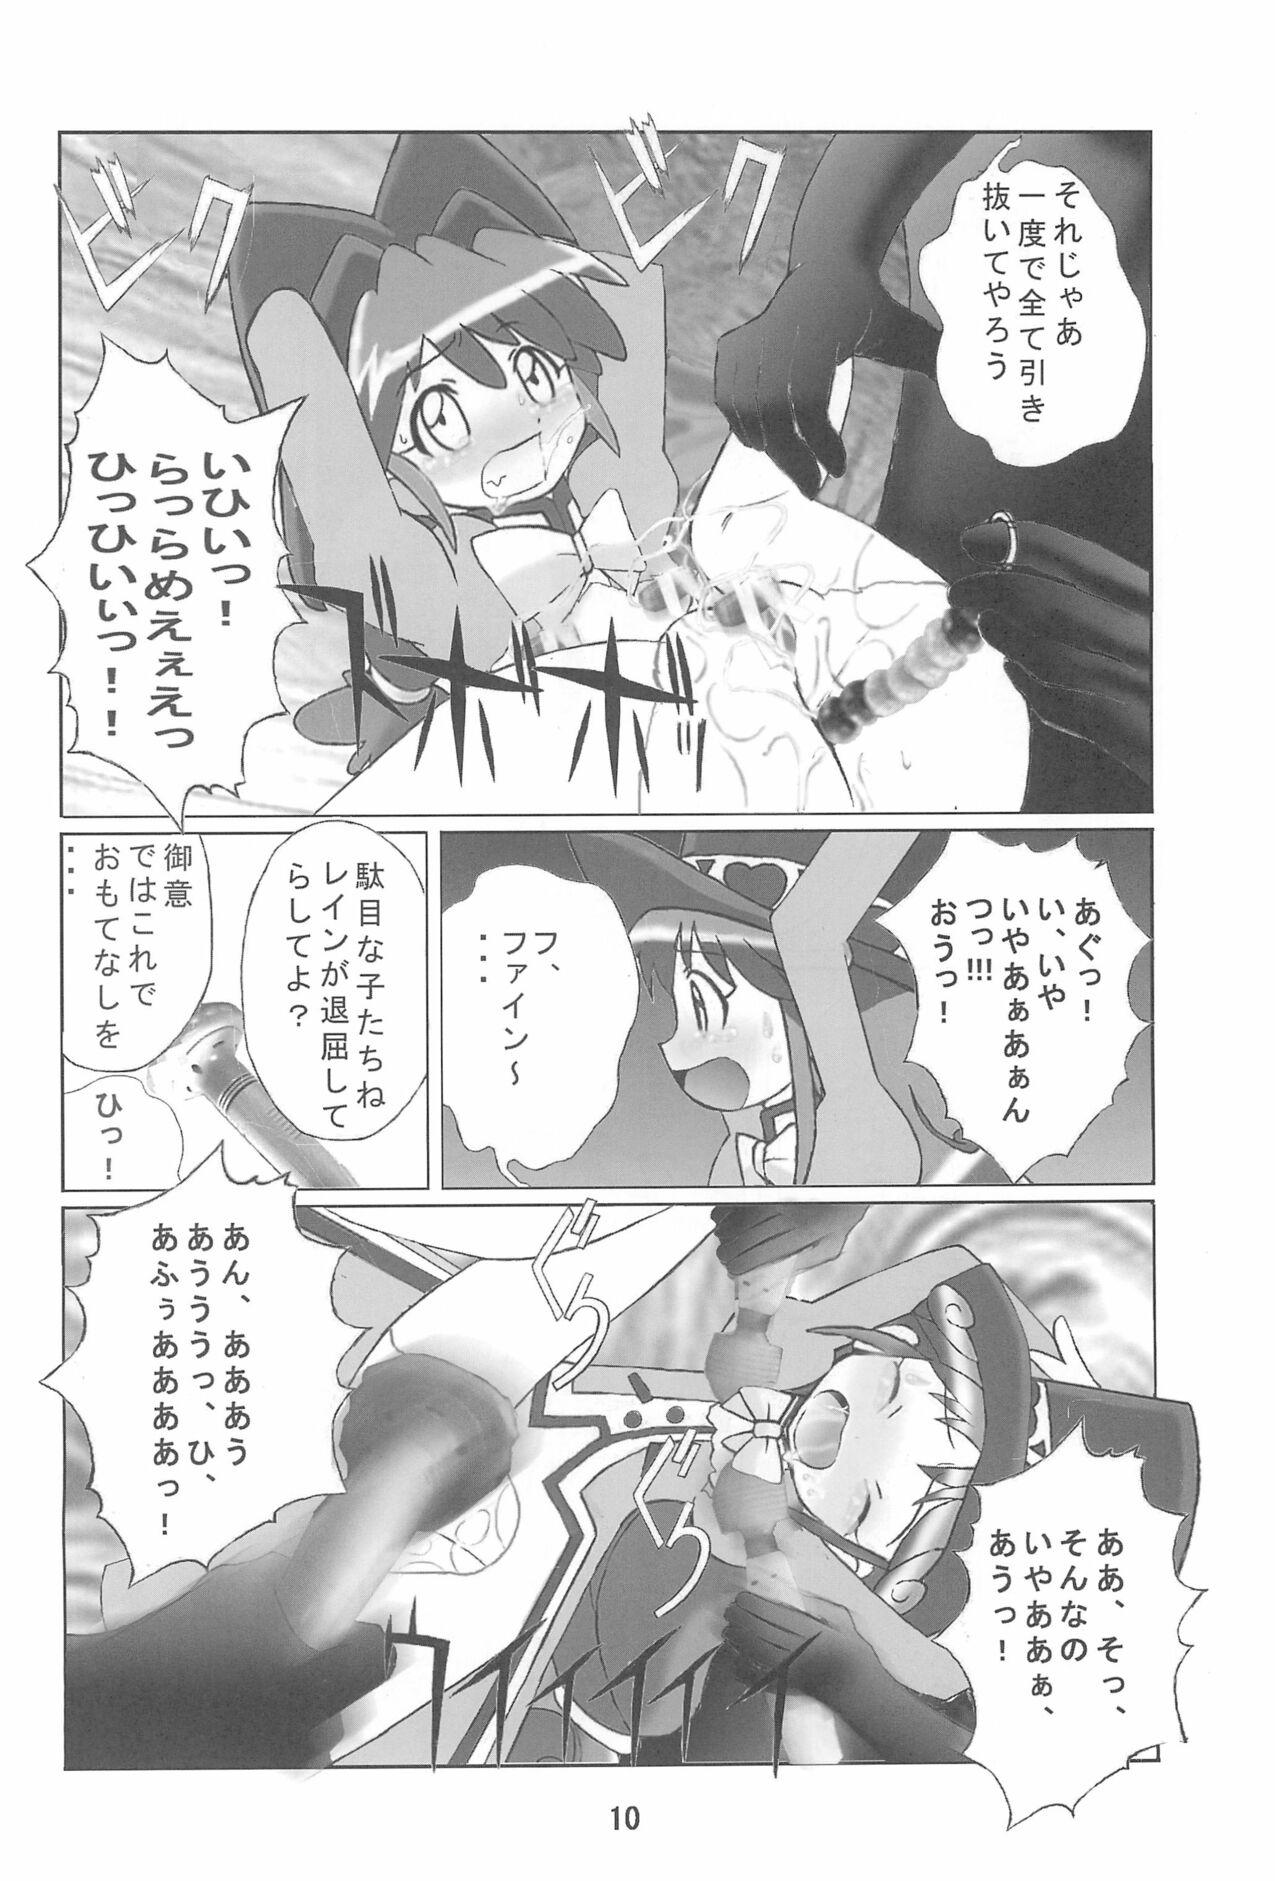 Vagina Kuuronziyou 14 - Fushigiboshi no futagohime | twin princesses of the wonder planet Blackcocks - Page 10